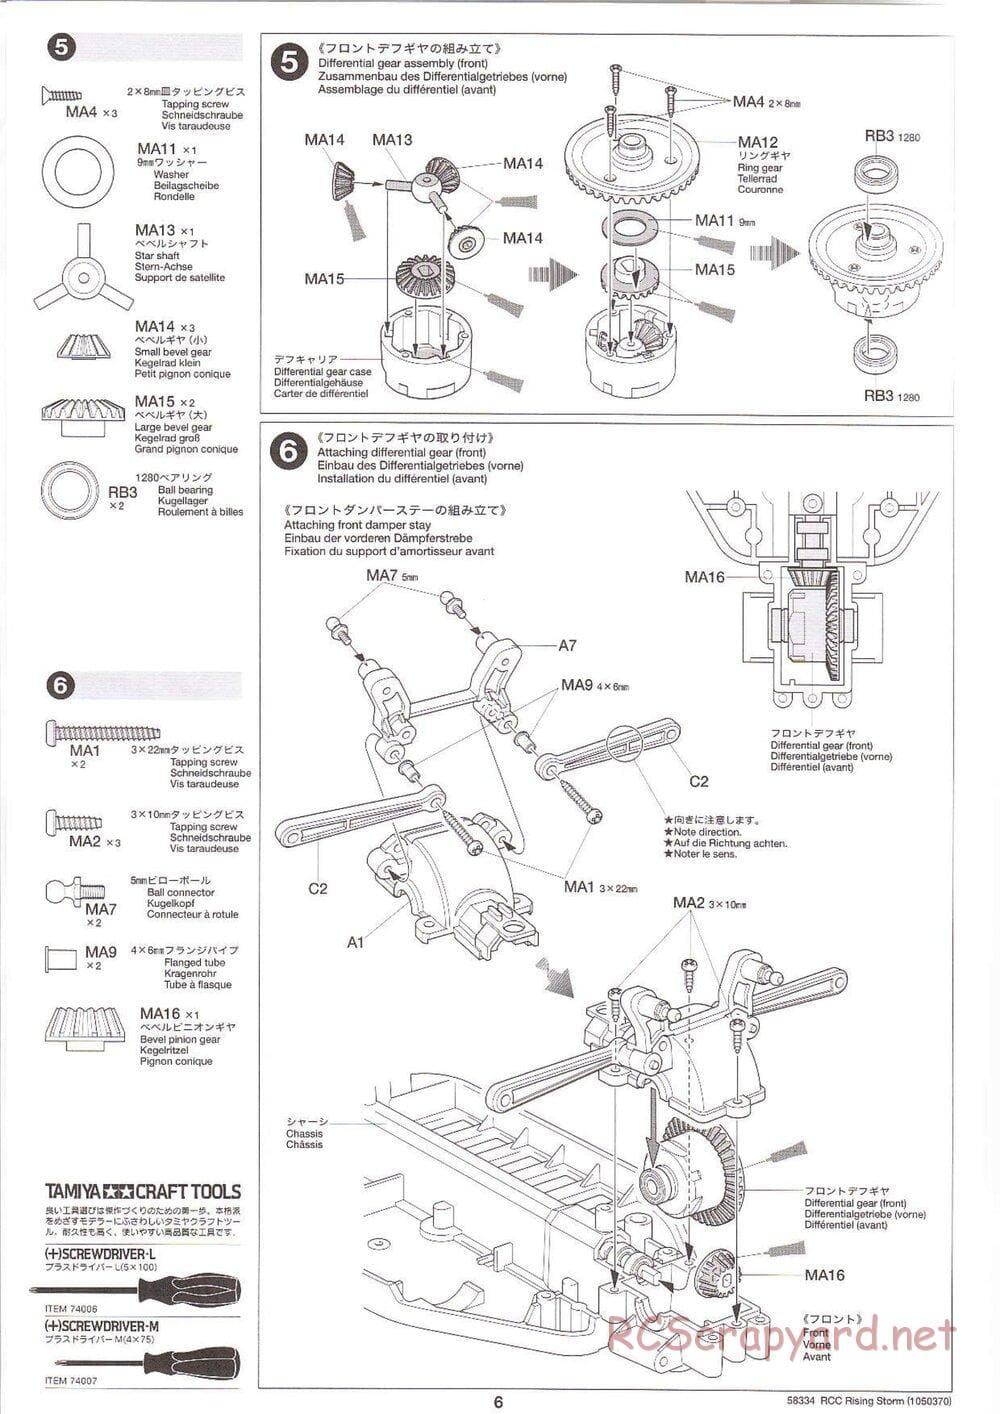 Tamiya - Rising Storm Chassis - Manual - Page 6